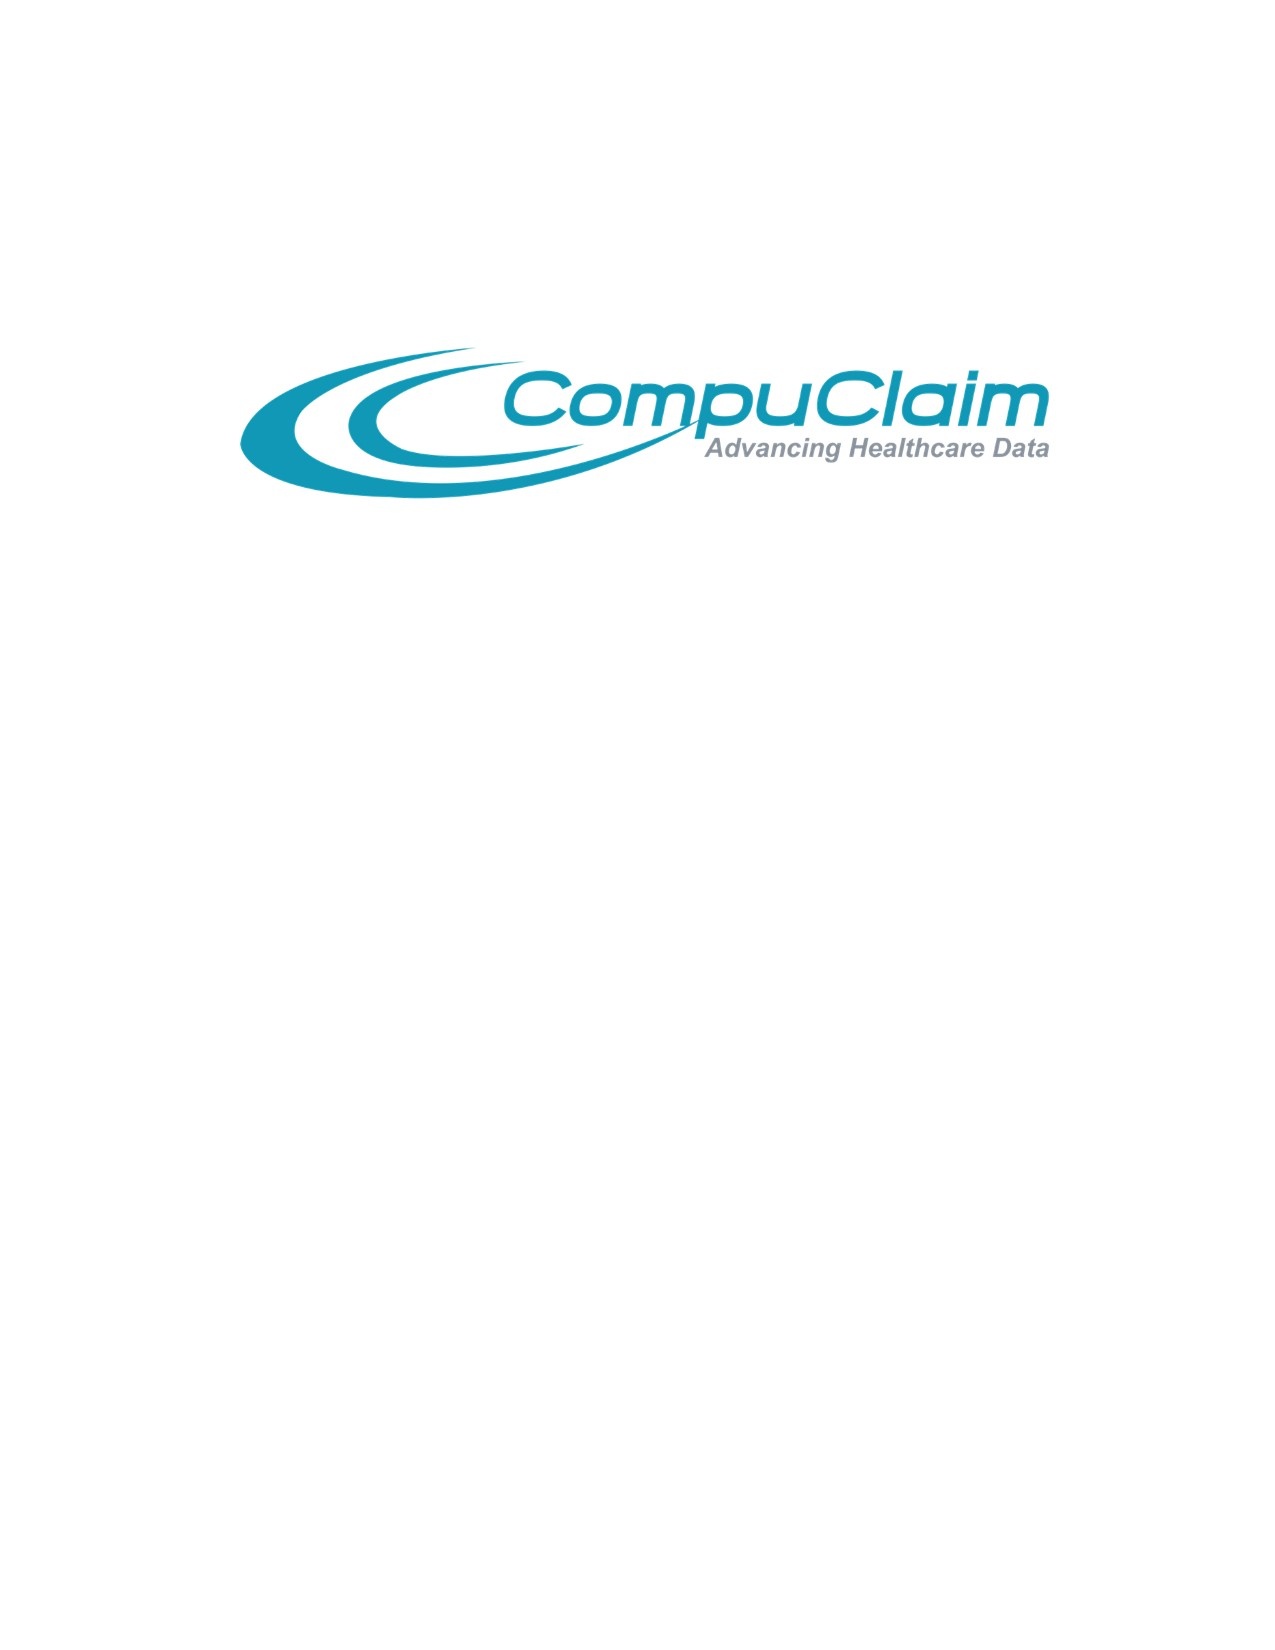 CompuClaim